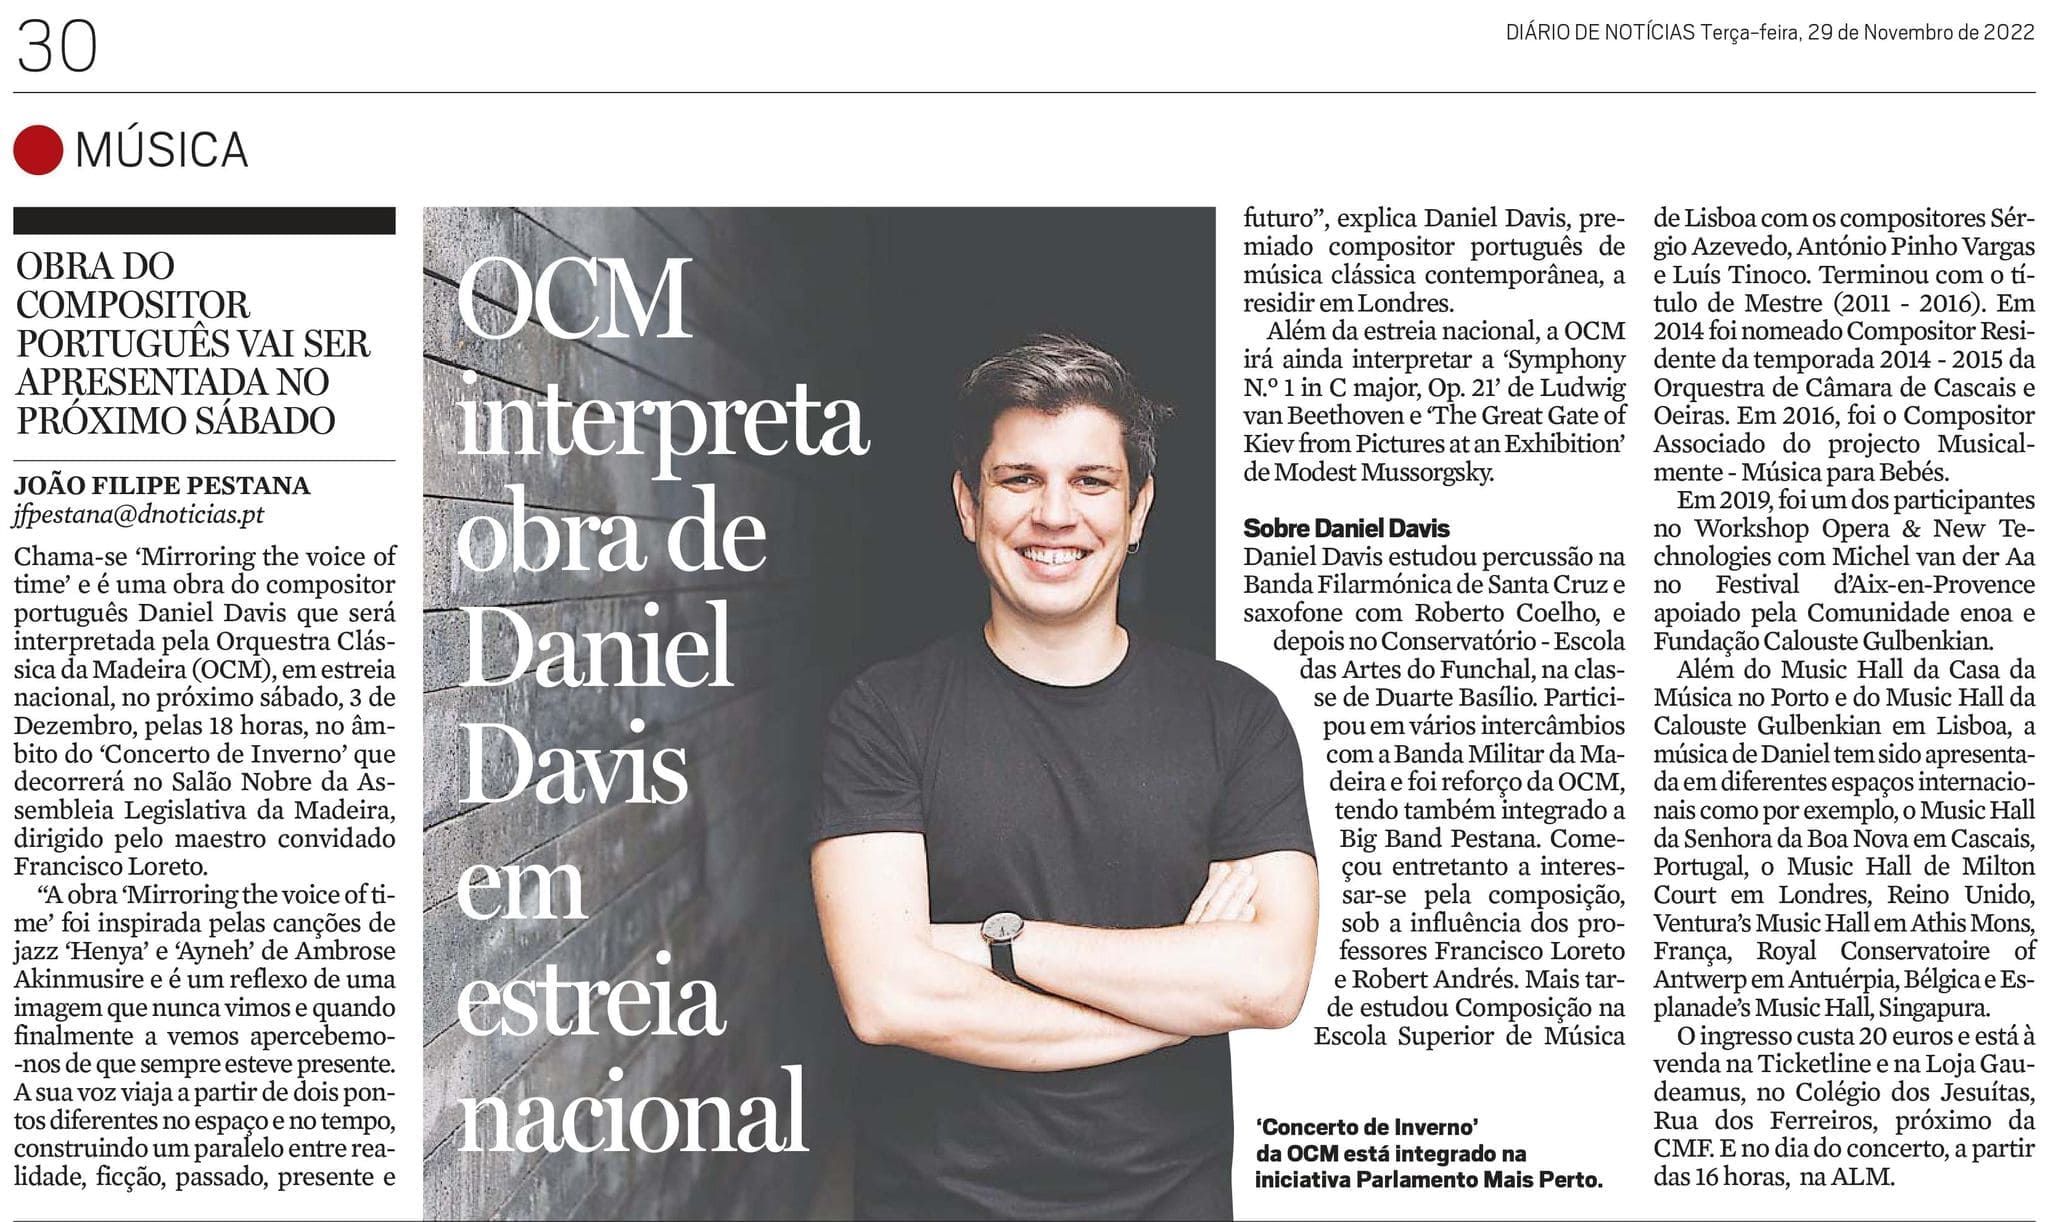 OCM INTERPRETA OBRA DE DANIEL DAVIS EM ESTREIA NACIONAL